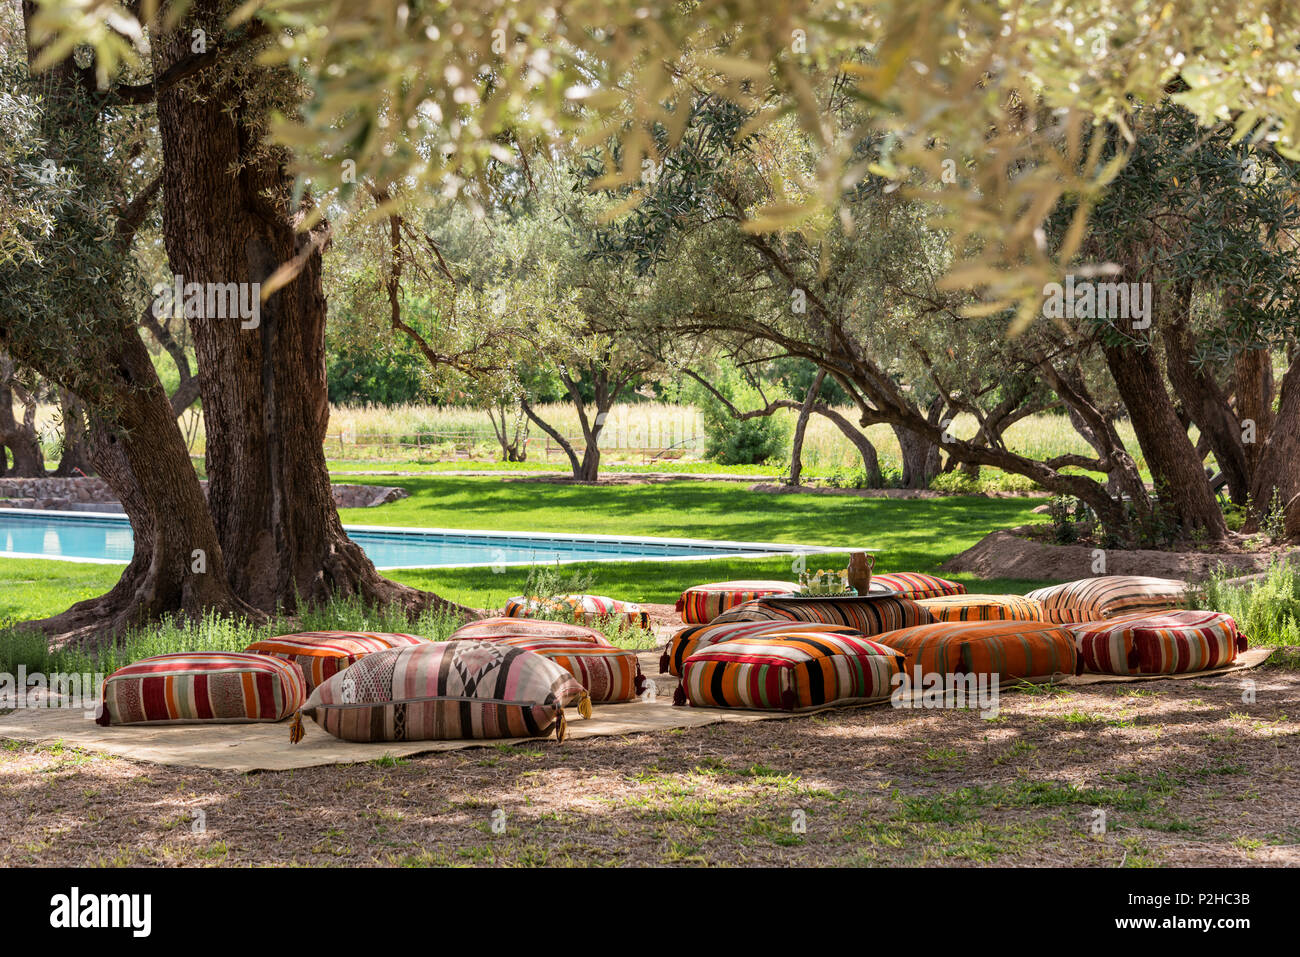 Kilim meubles pouffs dispersés parmi les oliviers dans jardin avec piscine Banque D'Images